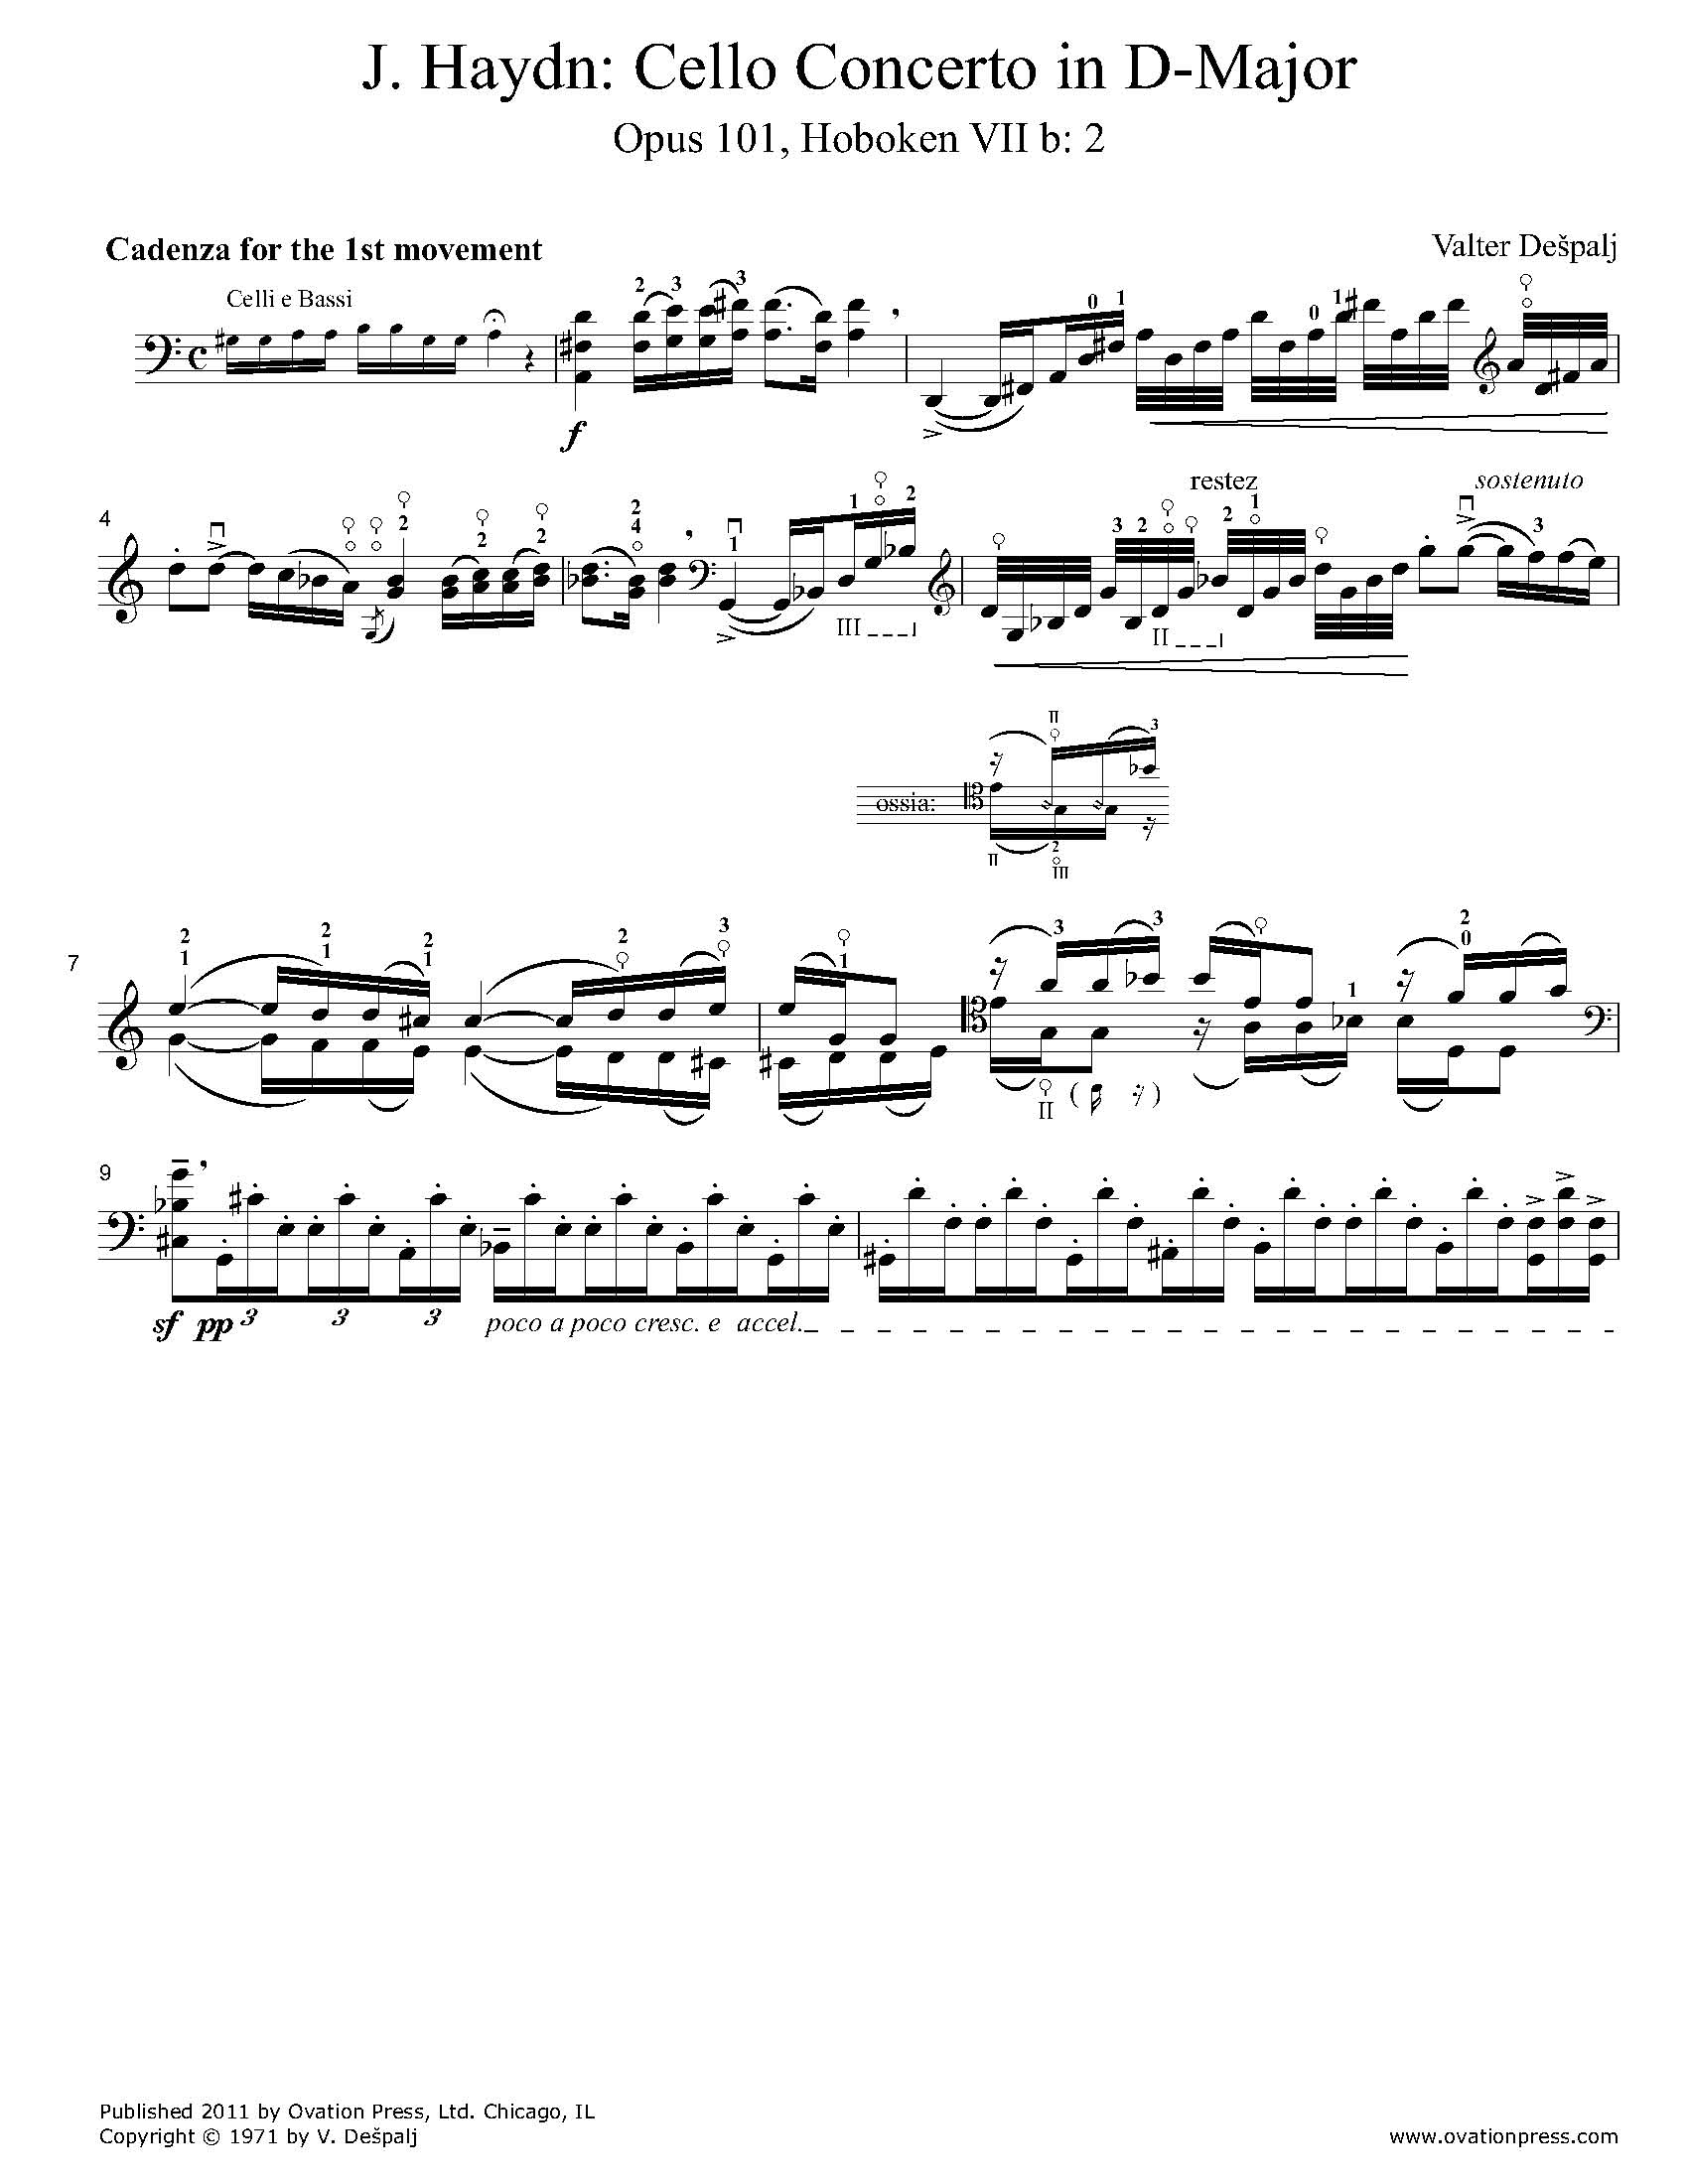 Haydn Cello Concerto No. 2 in D-Major Cadenzas